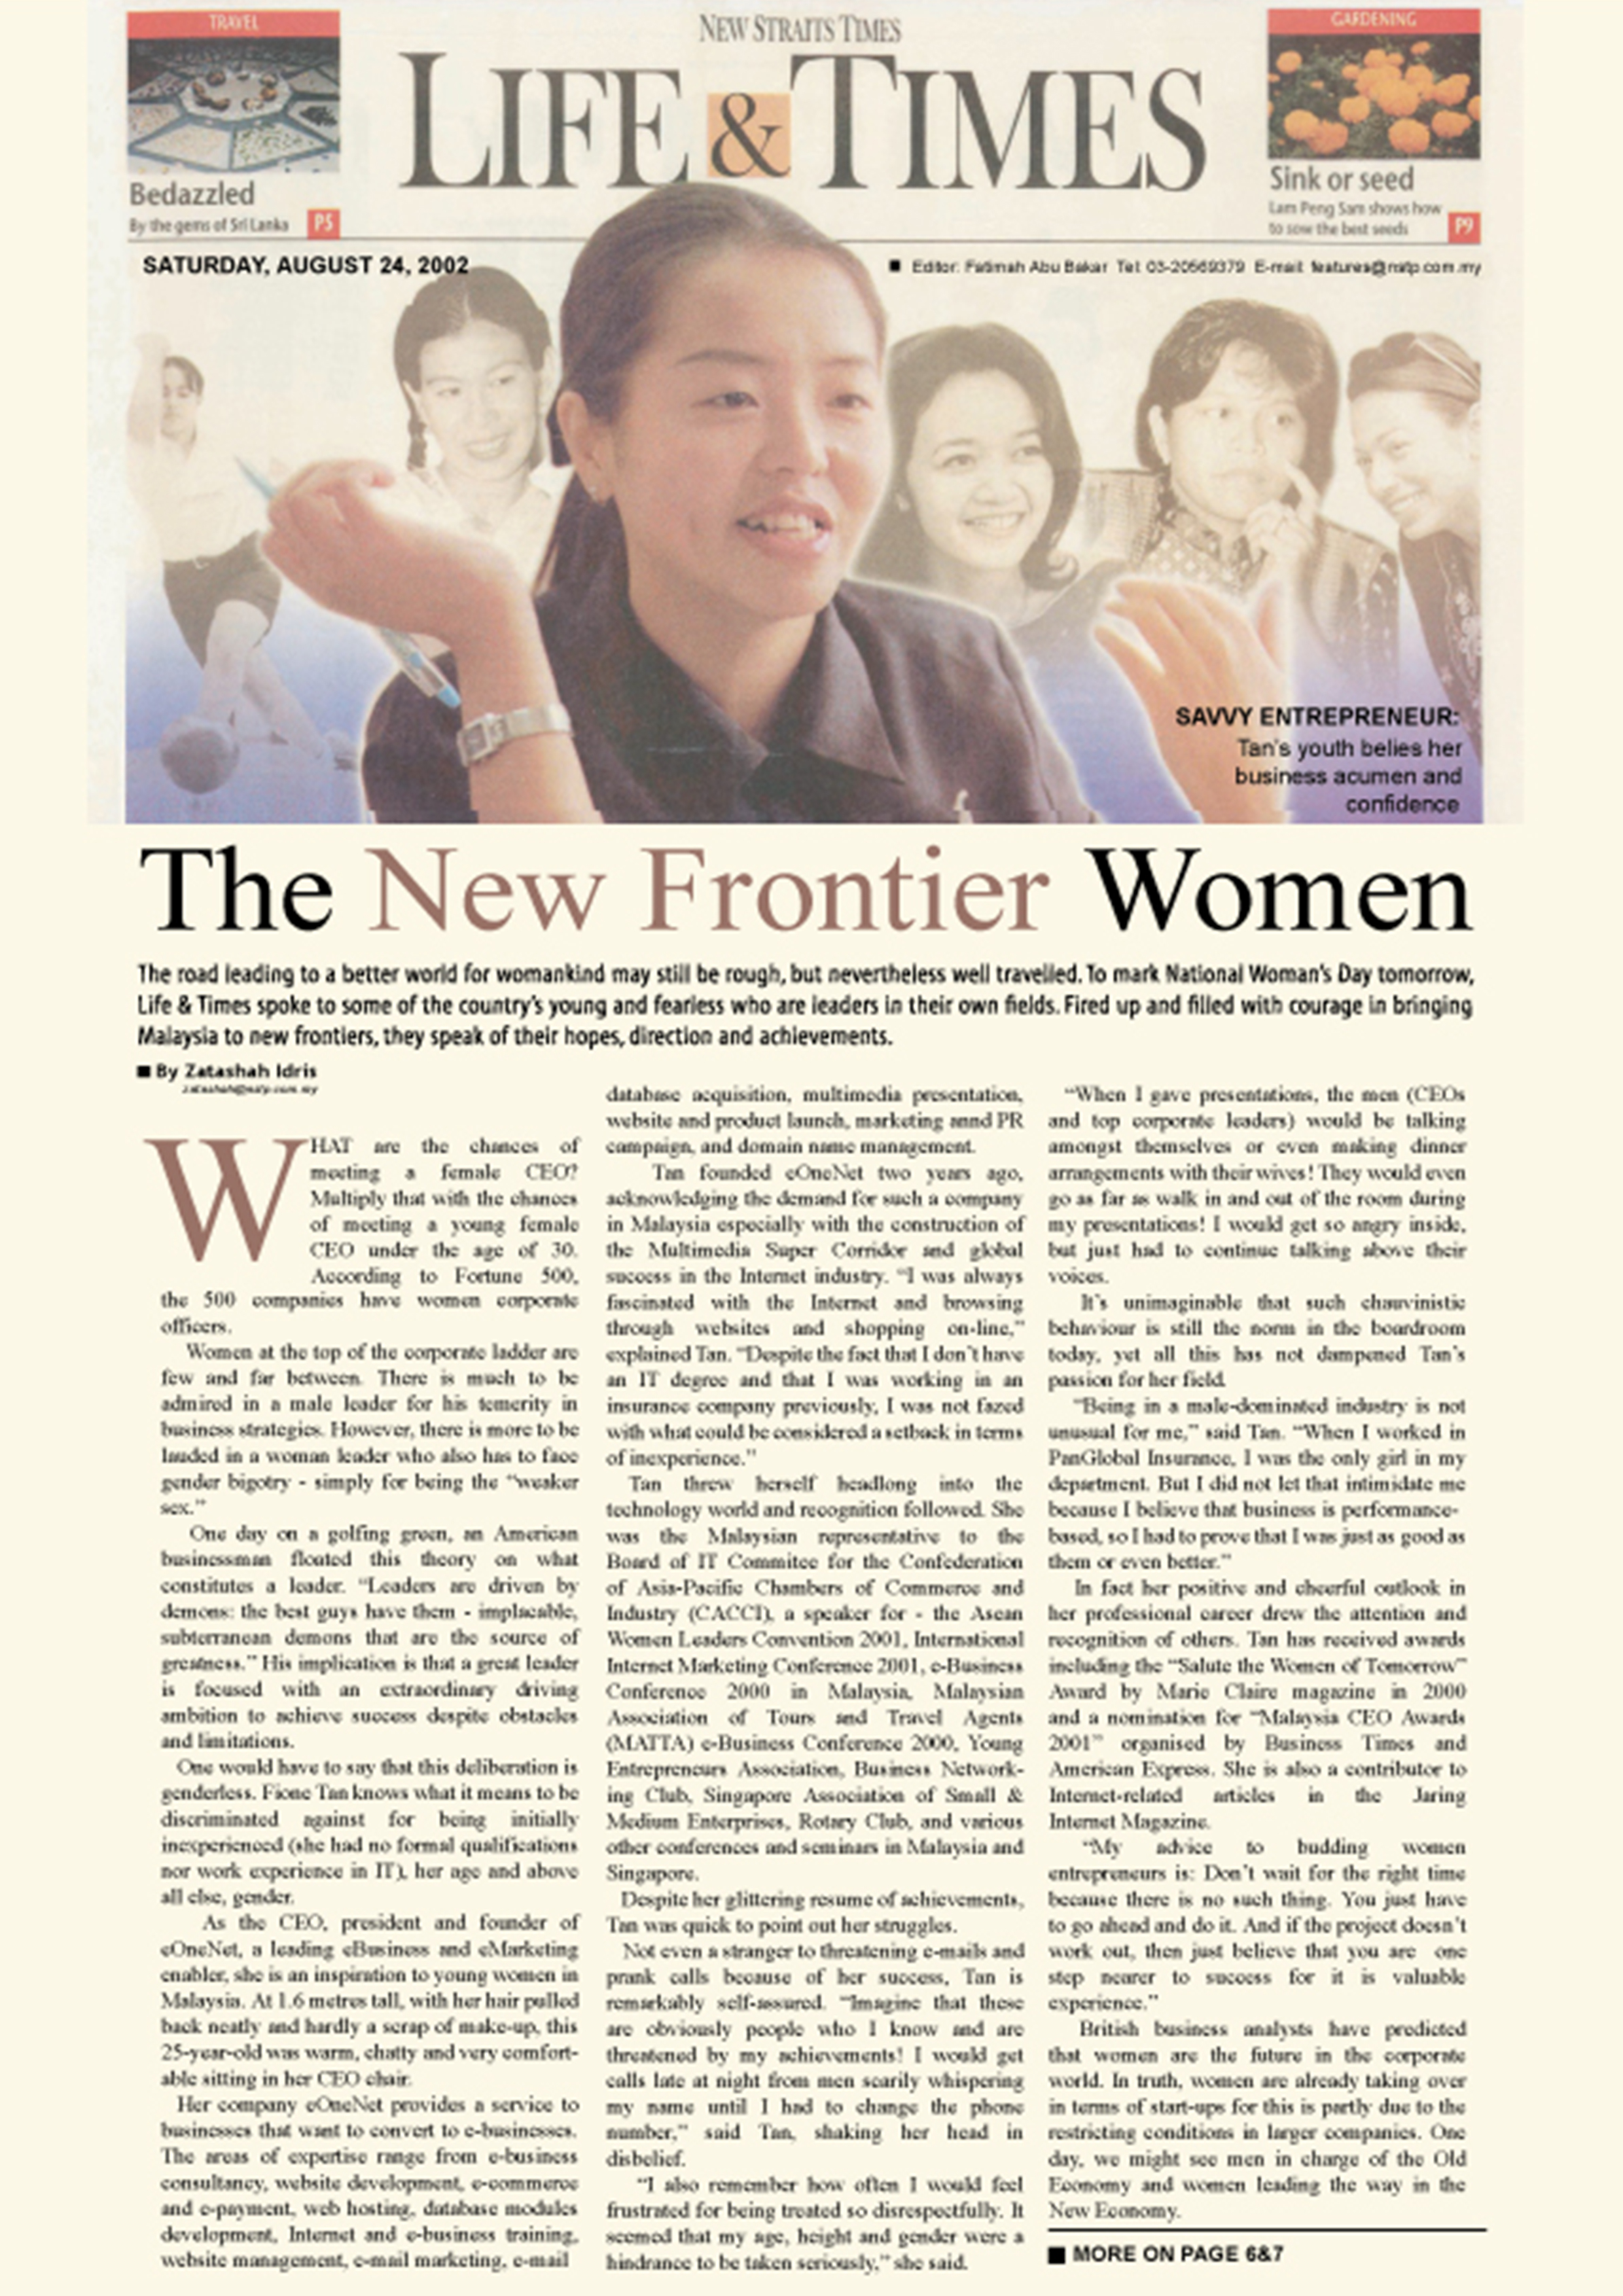 The New Frontier Women